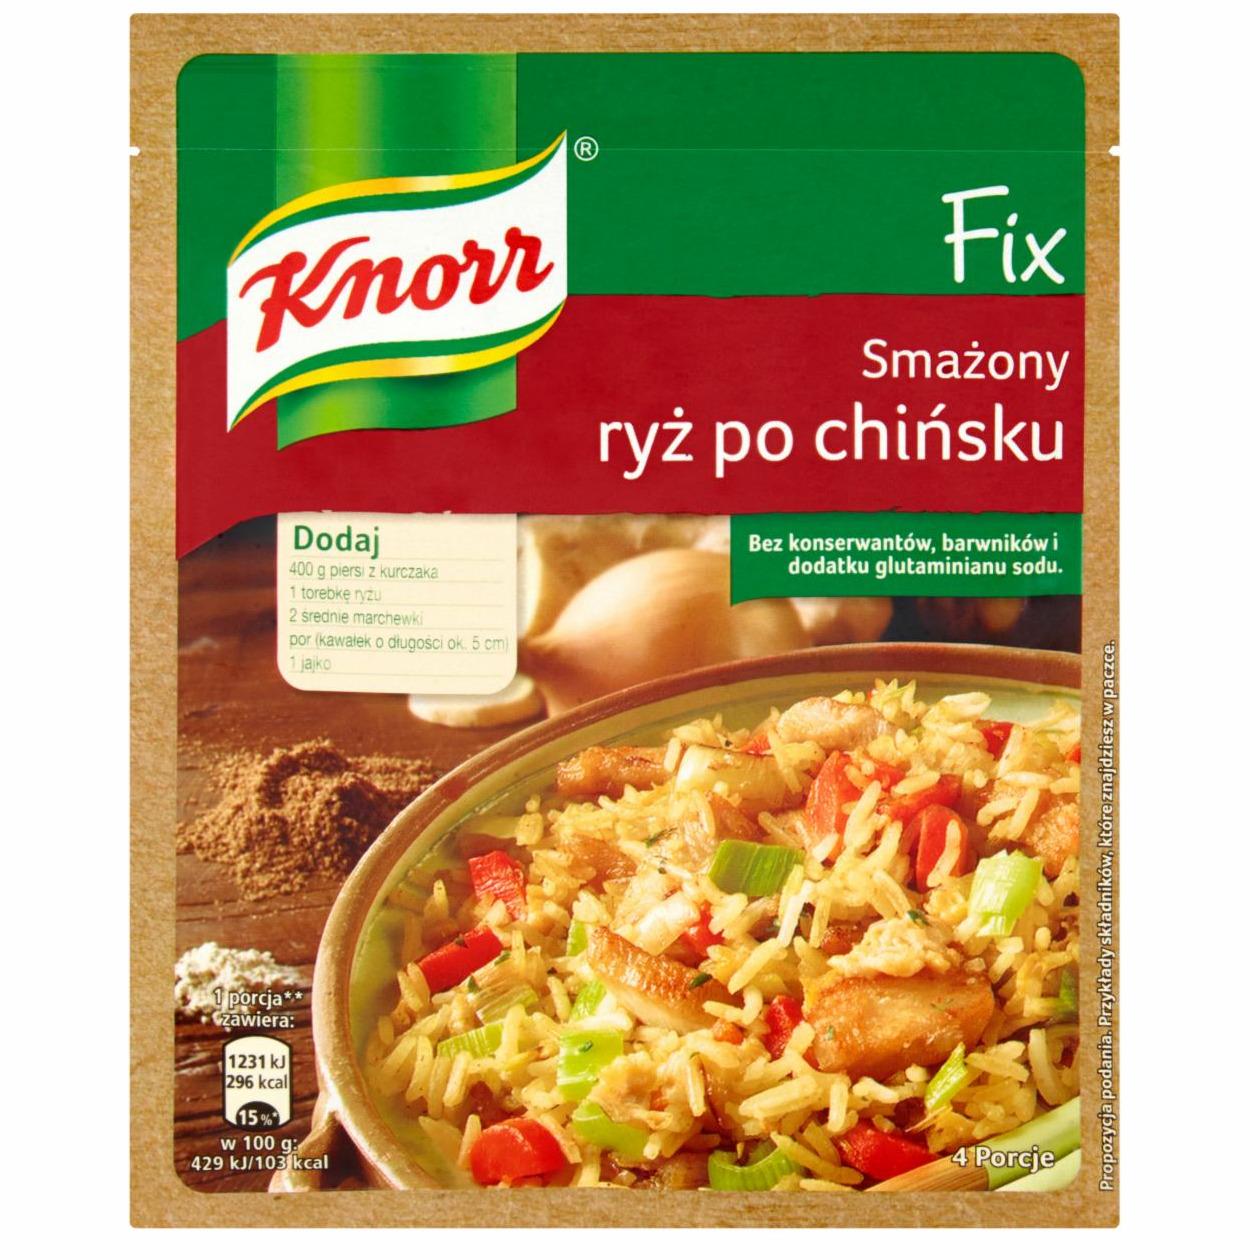 Zdjęcia - Knorr Fix smażony ryż po chińsku 27 g